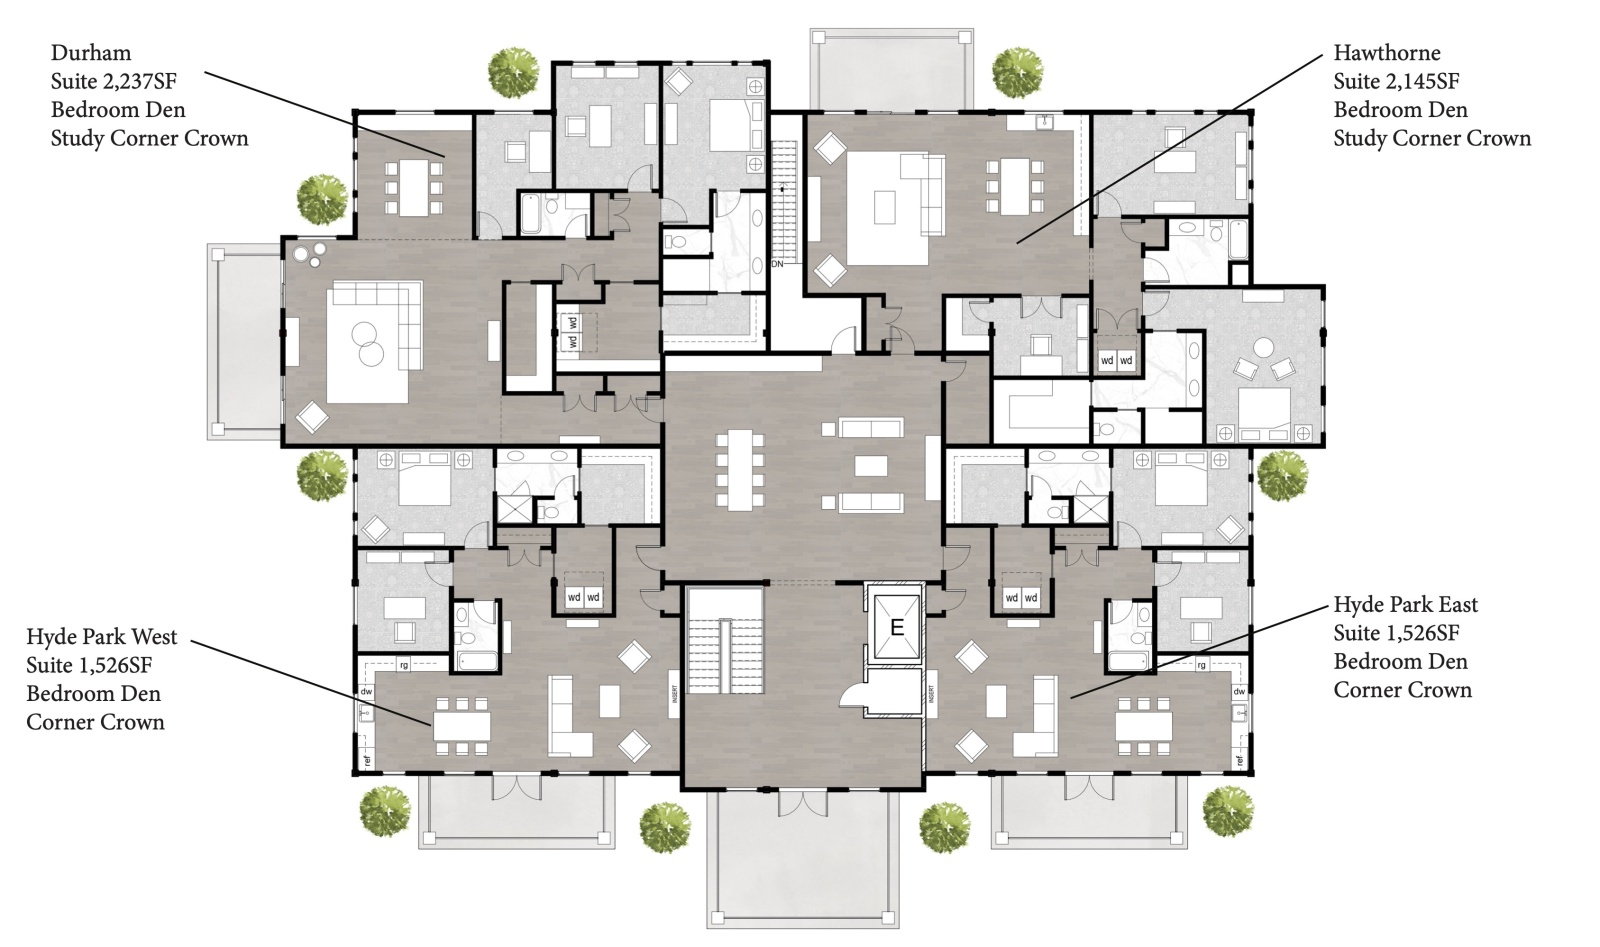 Villa 2 Floorplan